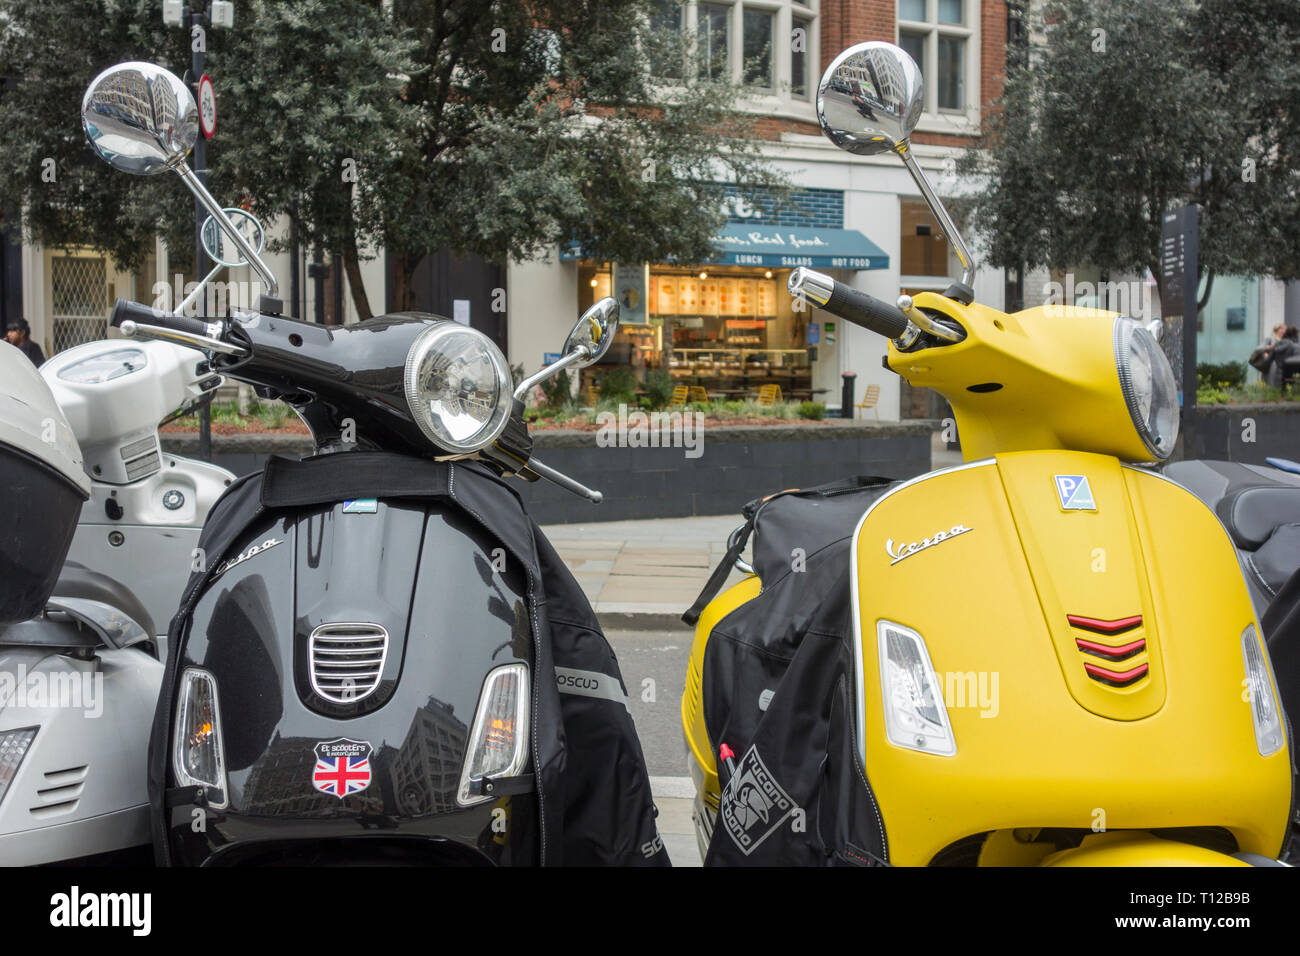 Piaggio Vespa scooters in central London, UK Stock Photo